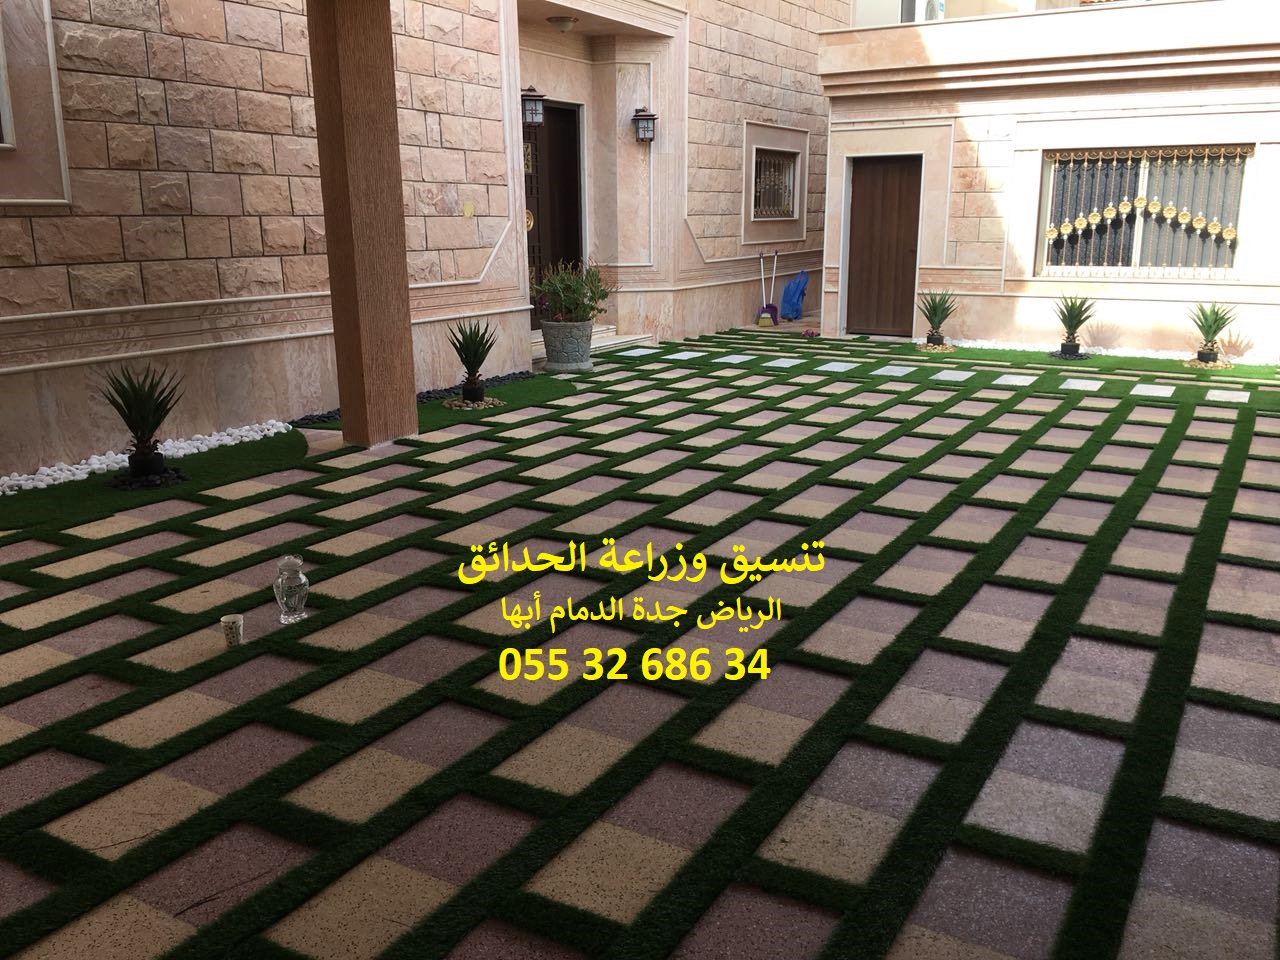 شركة تنسيق حدائق عشب صناعي عشب جداري الرياض جدة الدمام 0553268634 P_1143hg7li1